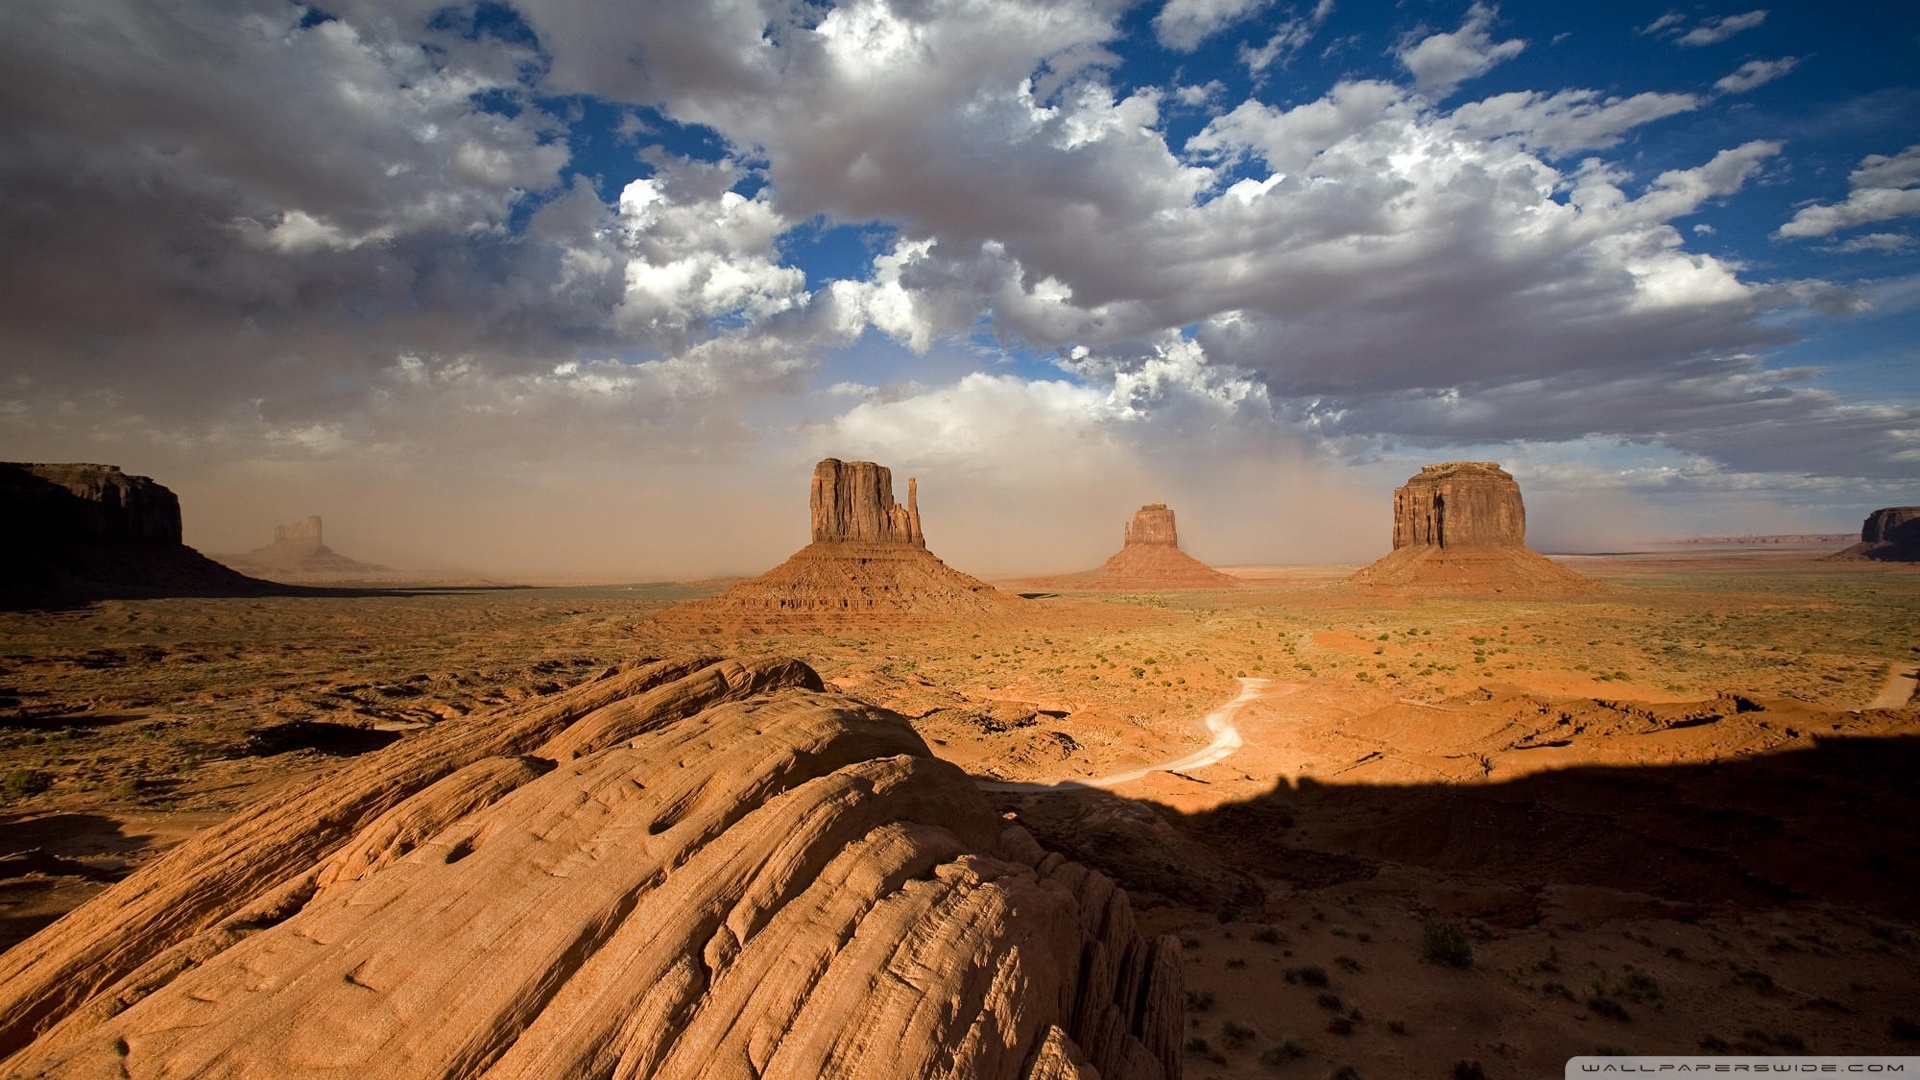  Valley Utah Wallpaper 1920x1080 Sandstorm In Monument Valley Utah 1920x1080